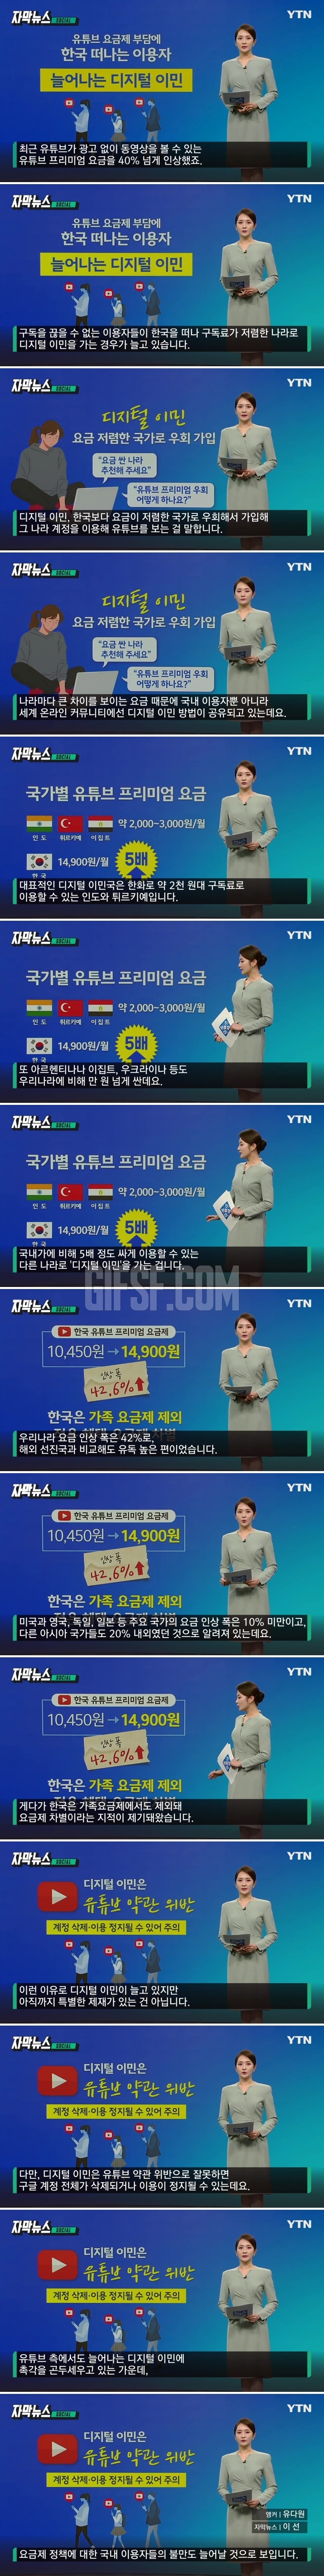 한국, 유난히 비싸다 .떠나기로 결단 내린 사람들.jpg